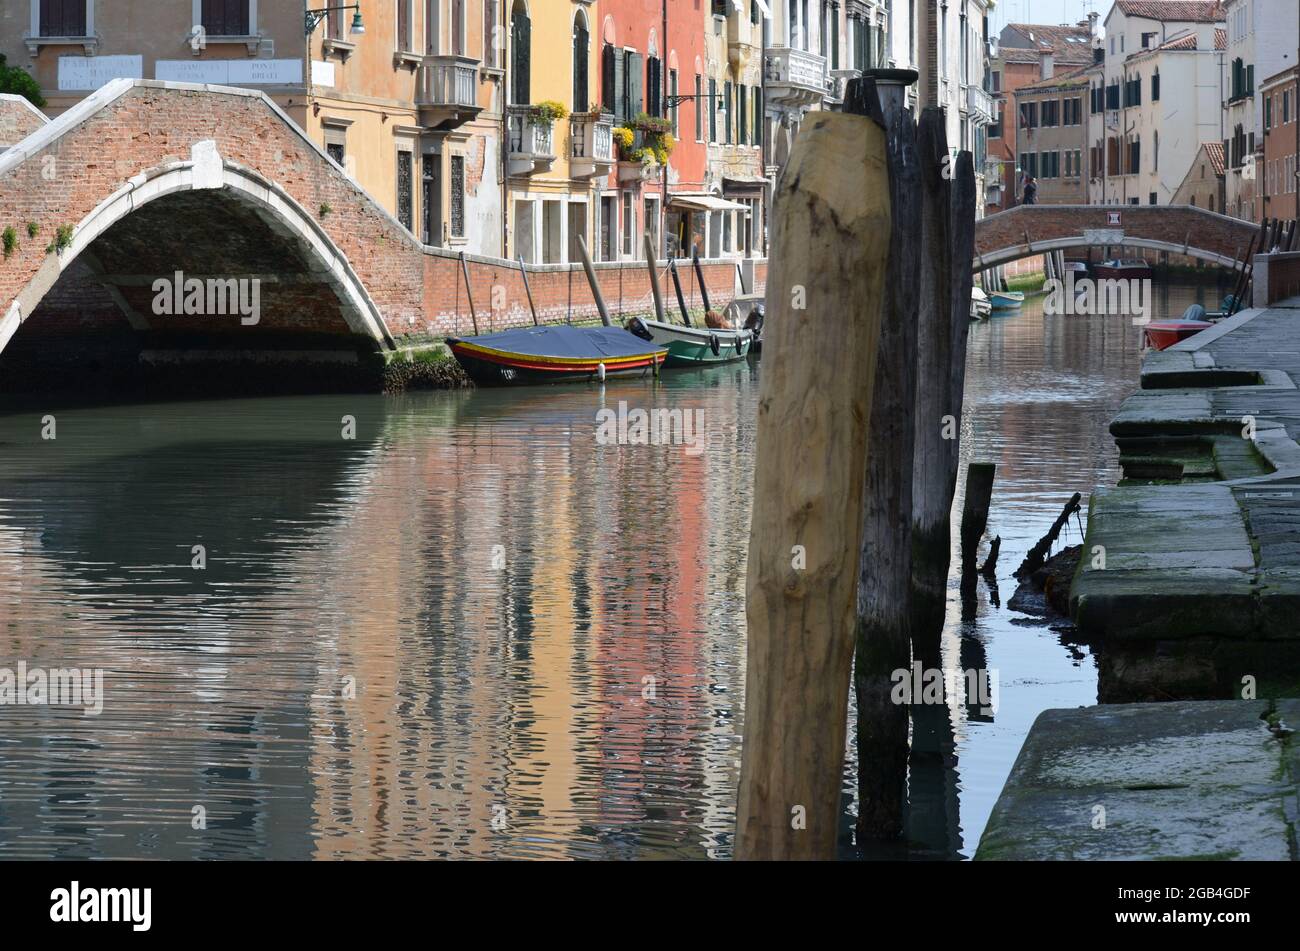 Vedutas des canaux de Venise avec les palais reflétés dans les eaux Banque D'Images